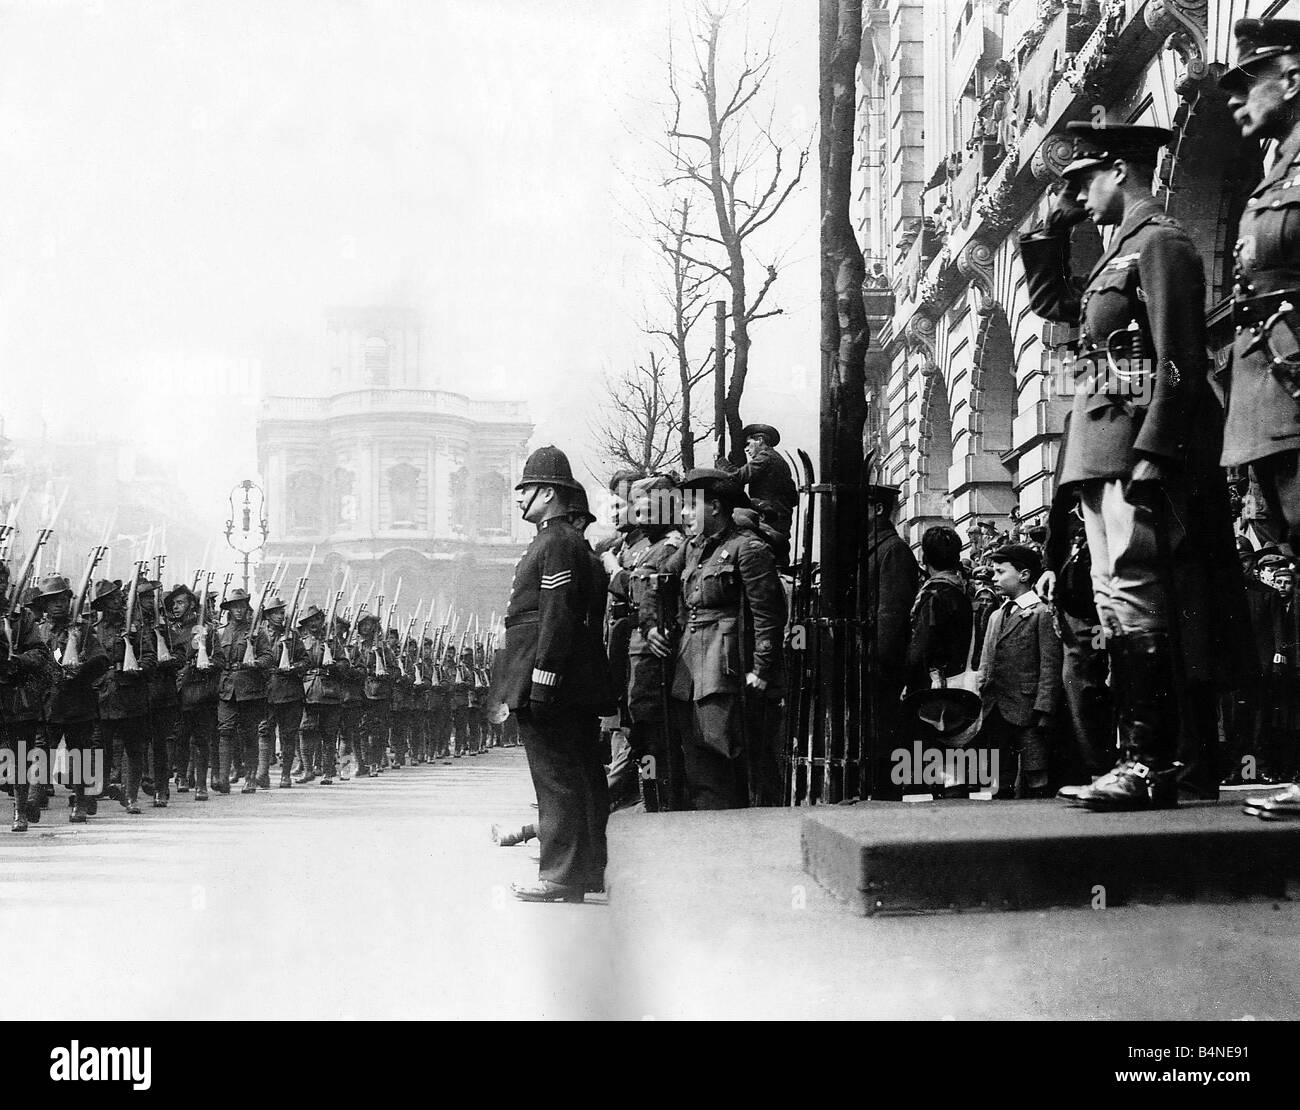 Weltkrieg ein Prinz Edward später König Edward VII Salute braucht, als die Anzac Australien Neuseeland Soldaten Truppen marschieren durch London 1919 Stockfoto